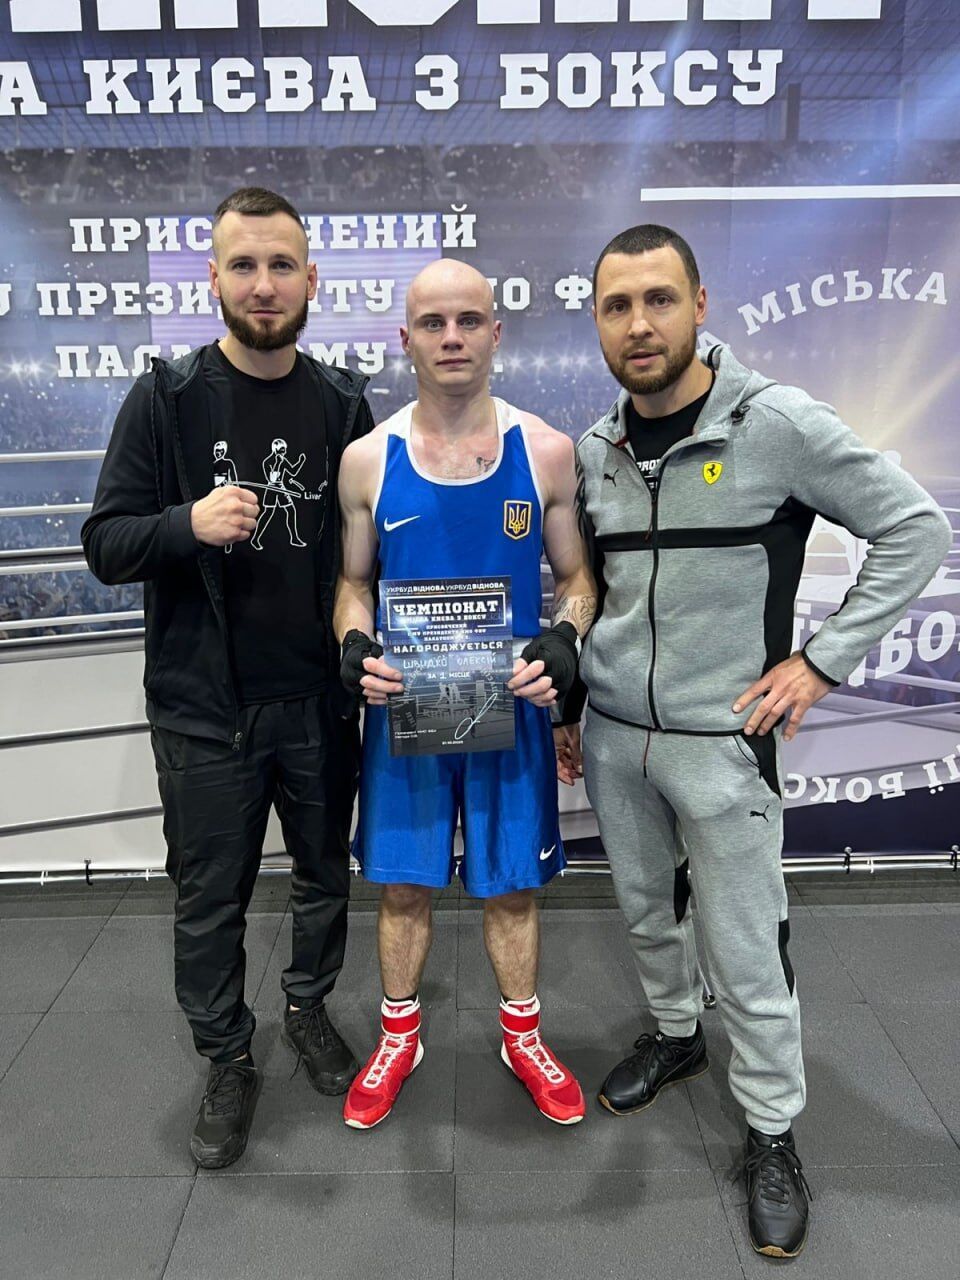 Боксер Алексей Швыдко, занявший 1 место во 2 группе в финале чемпионата Киева по боксу